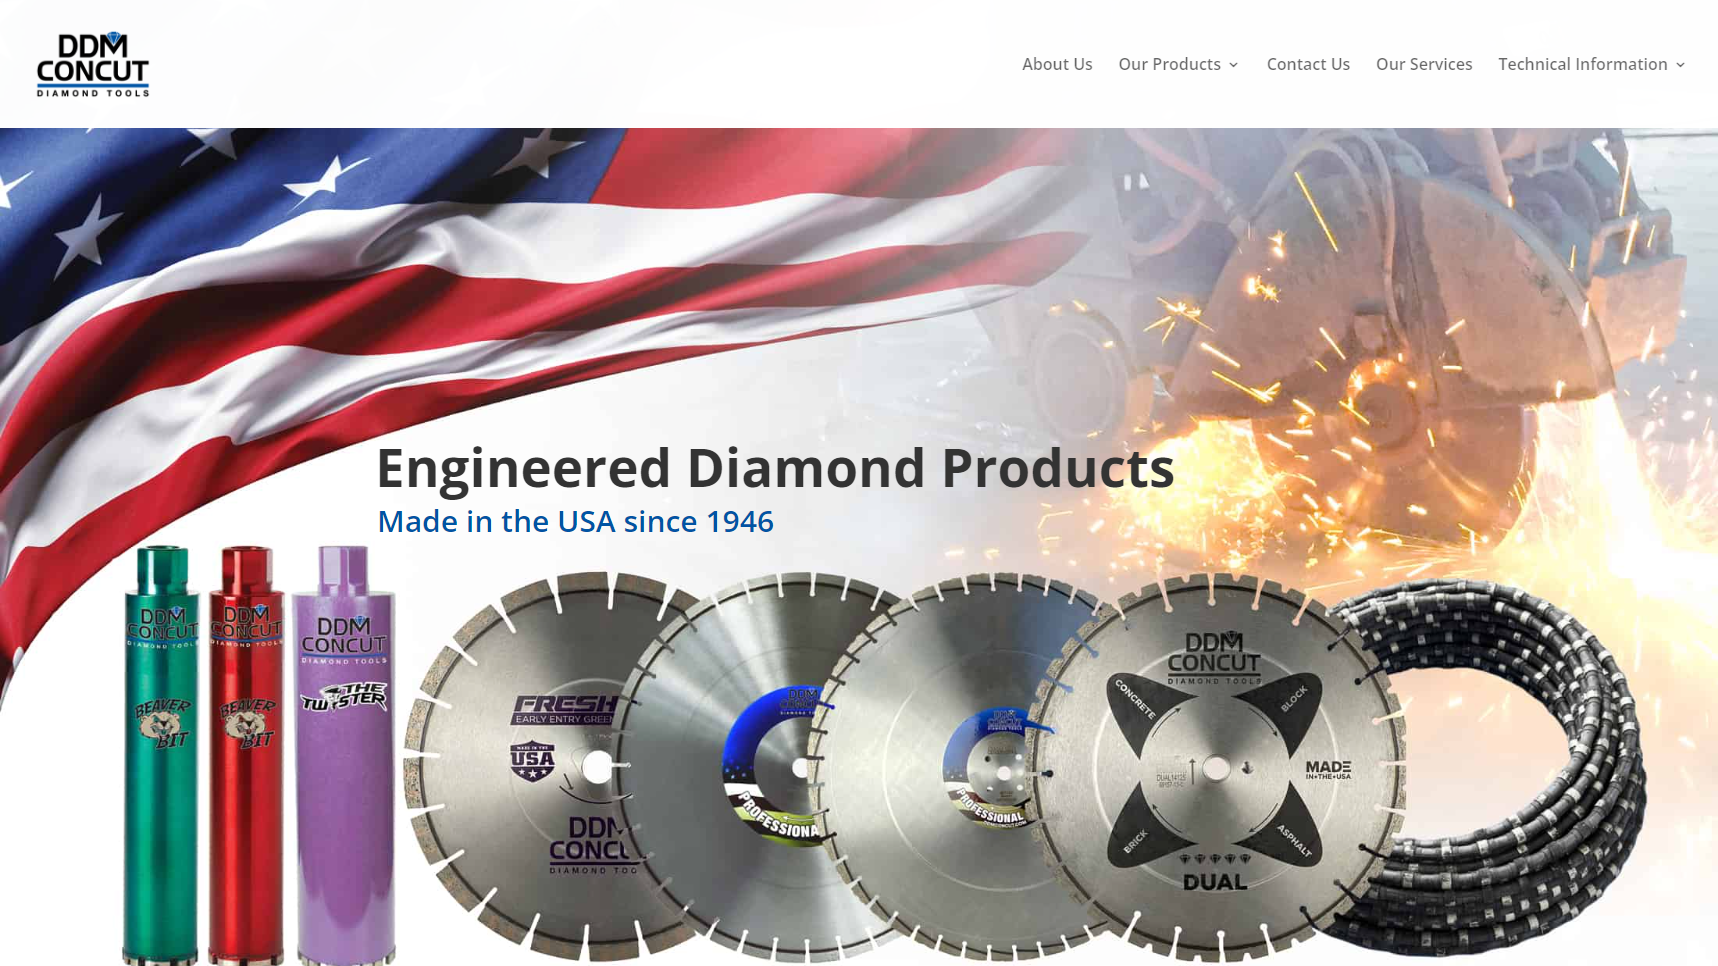 DDM Concut - Diamond Cutting Tool Manufacturer